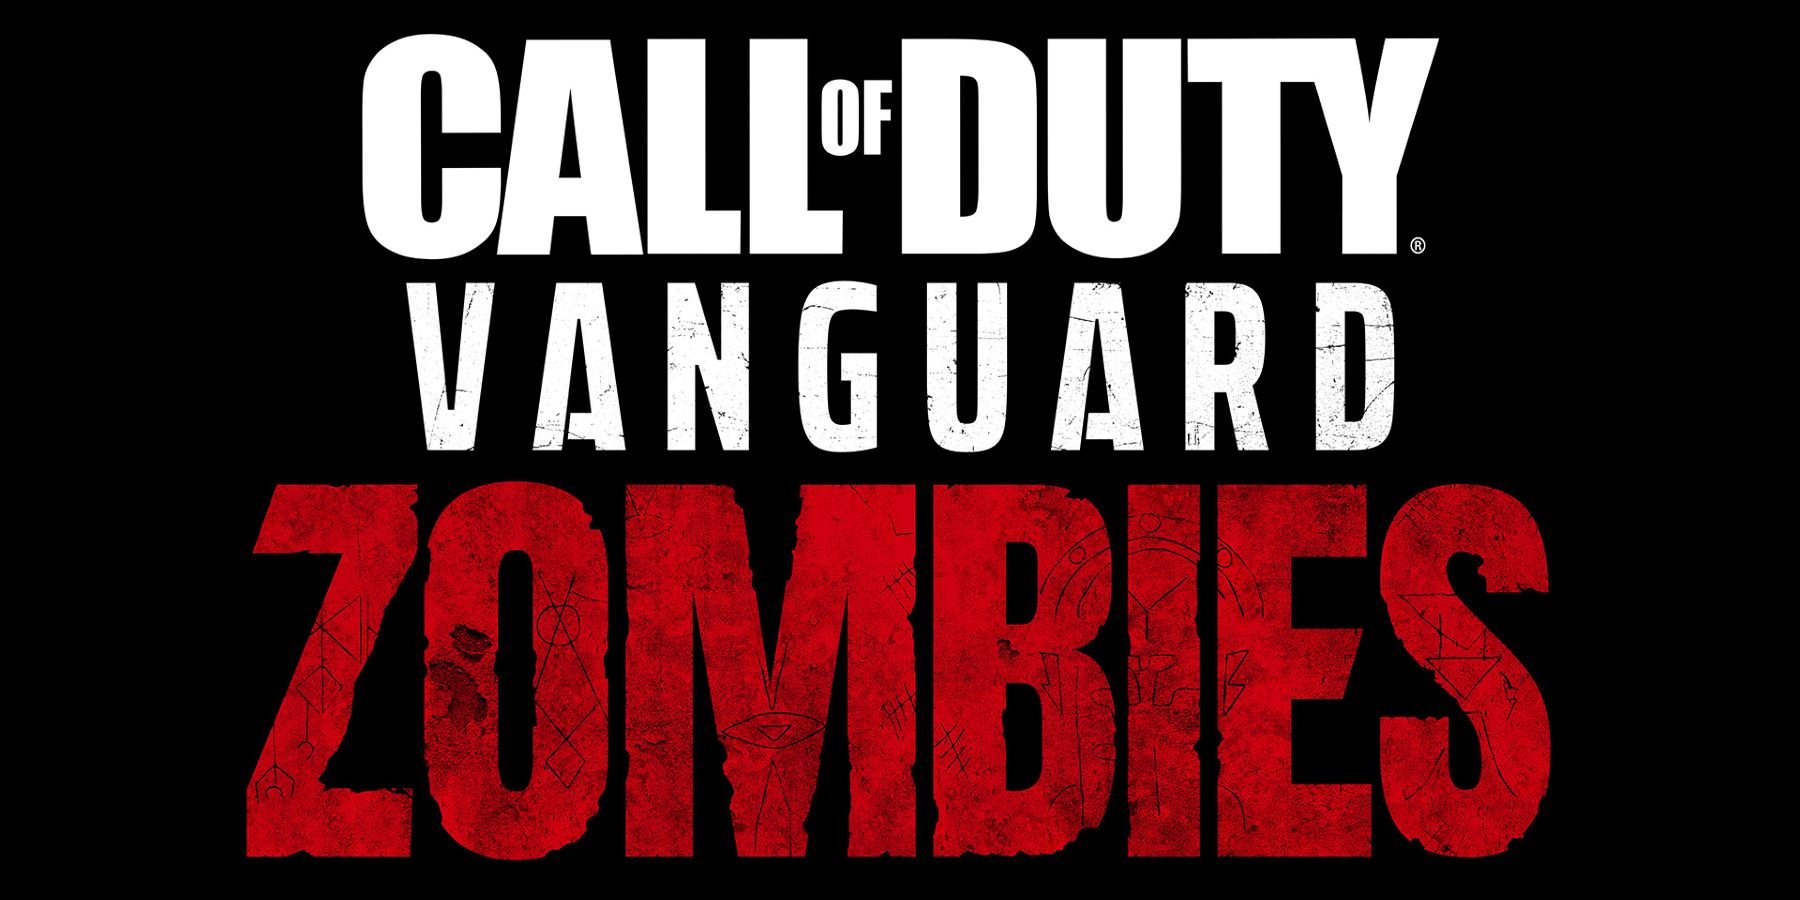 Call Of Duty Vanguard Zombies Mokhoa